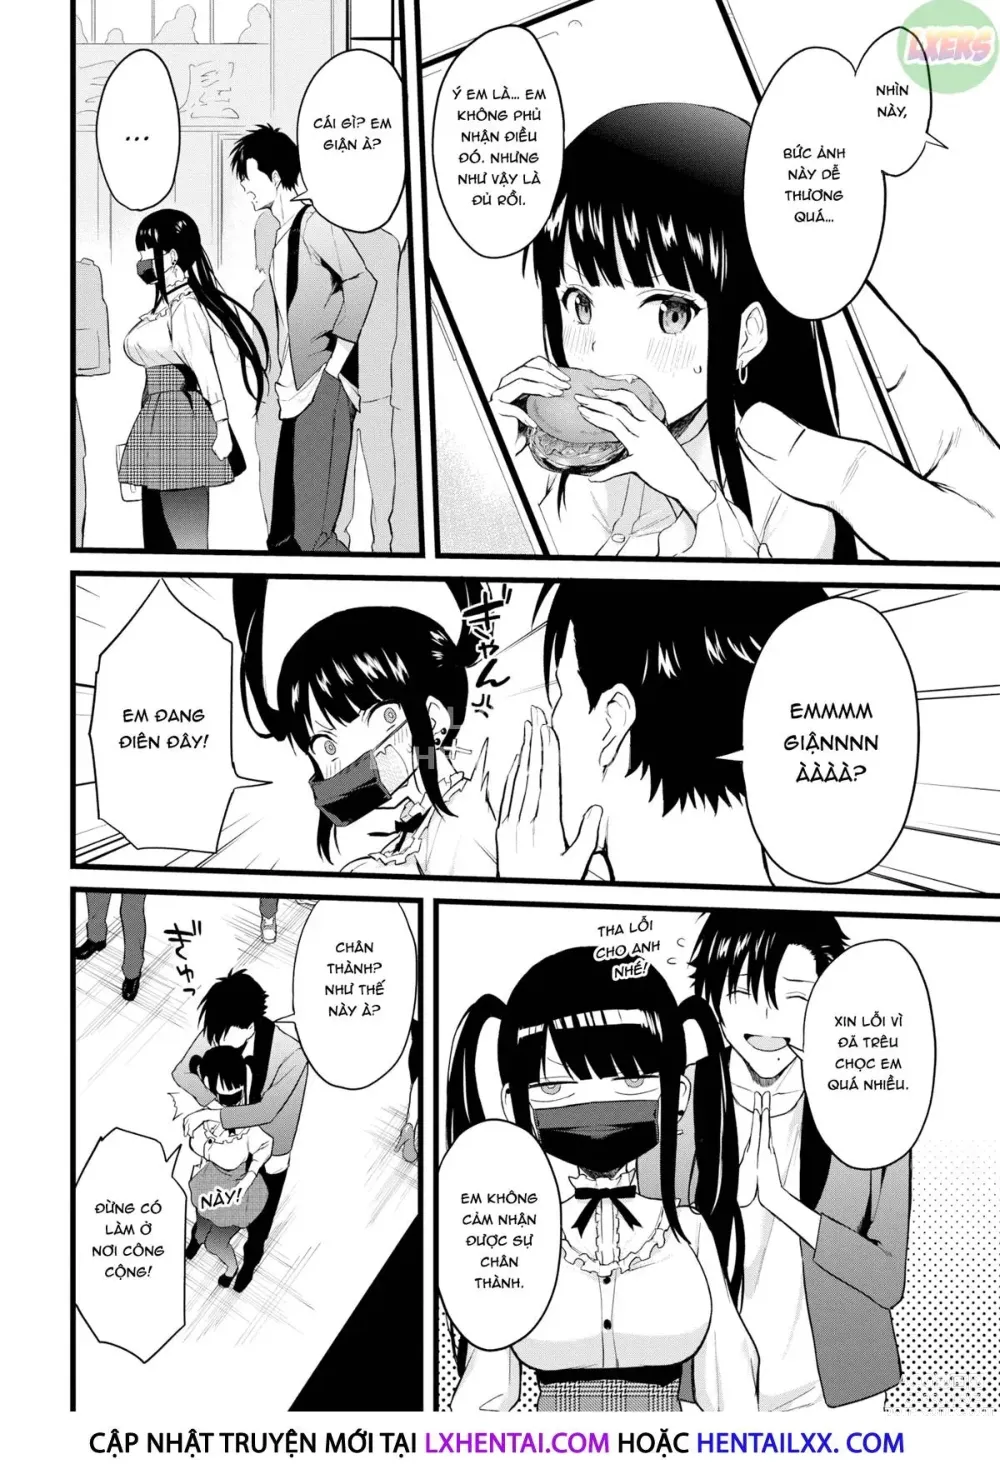 Page 4 of doujinshi Điều em yêu ở anh